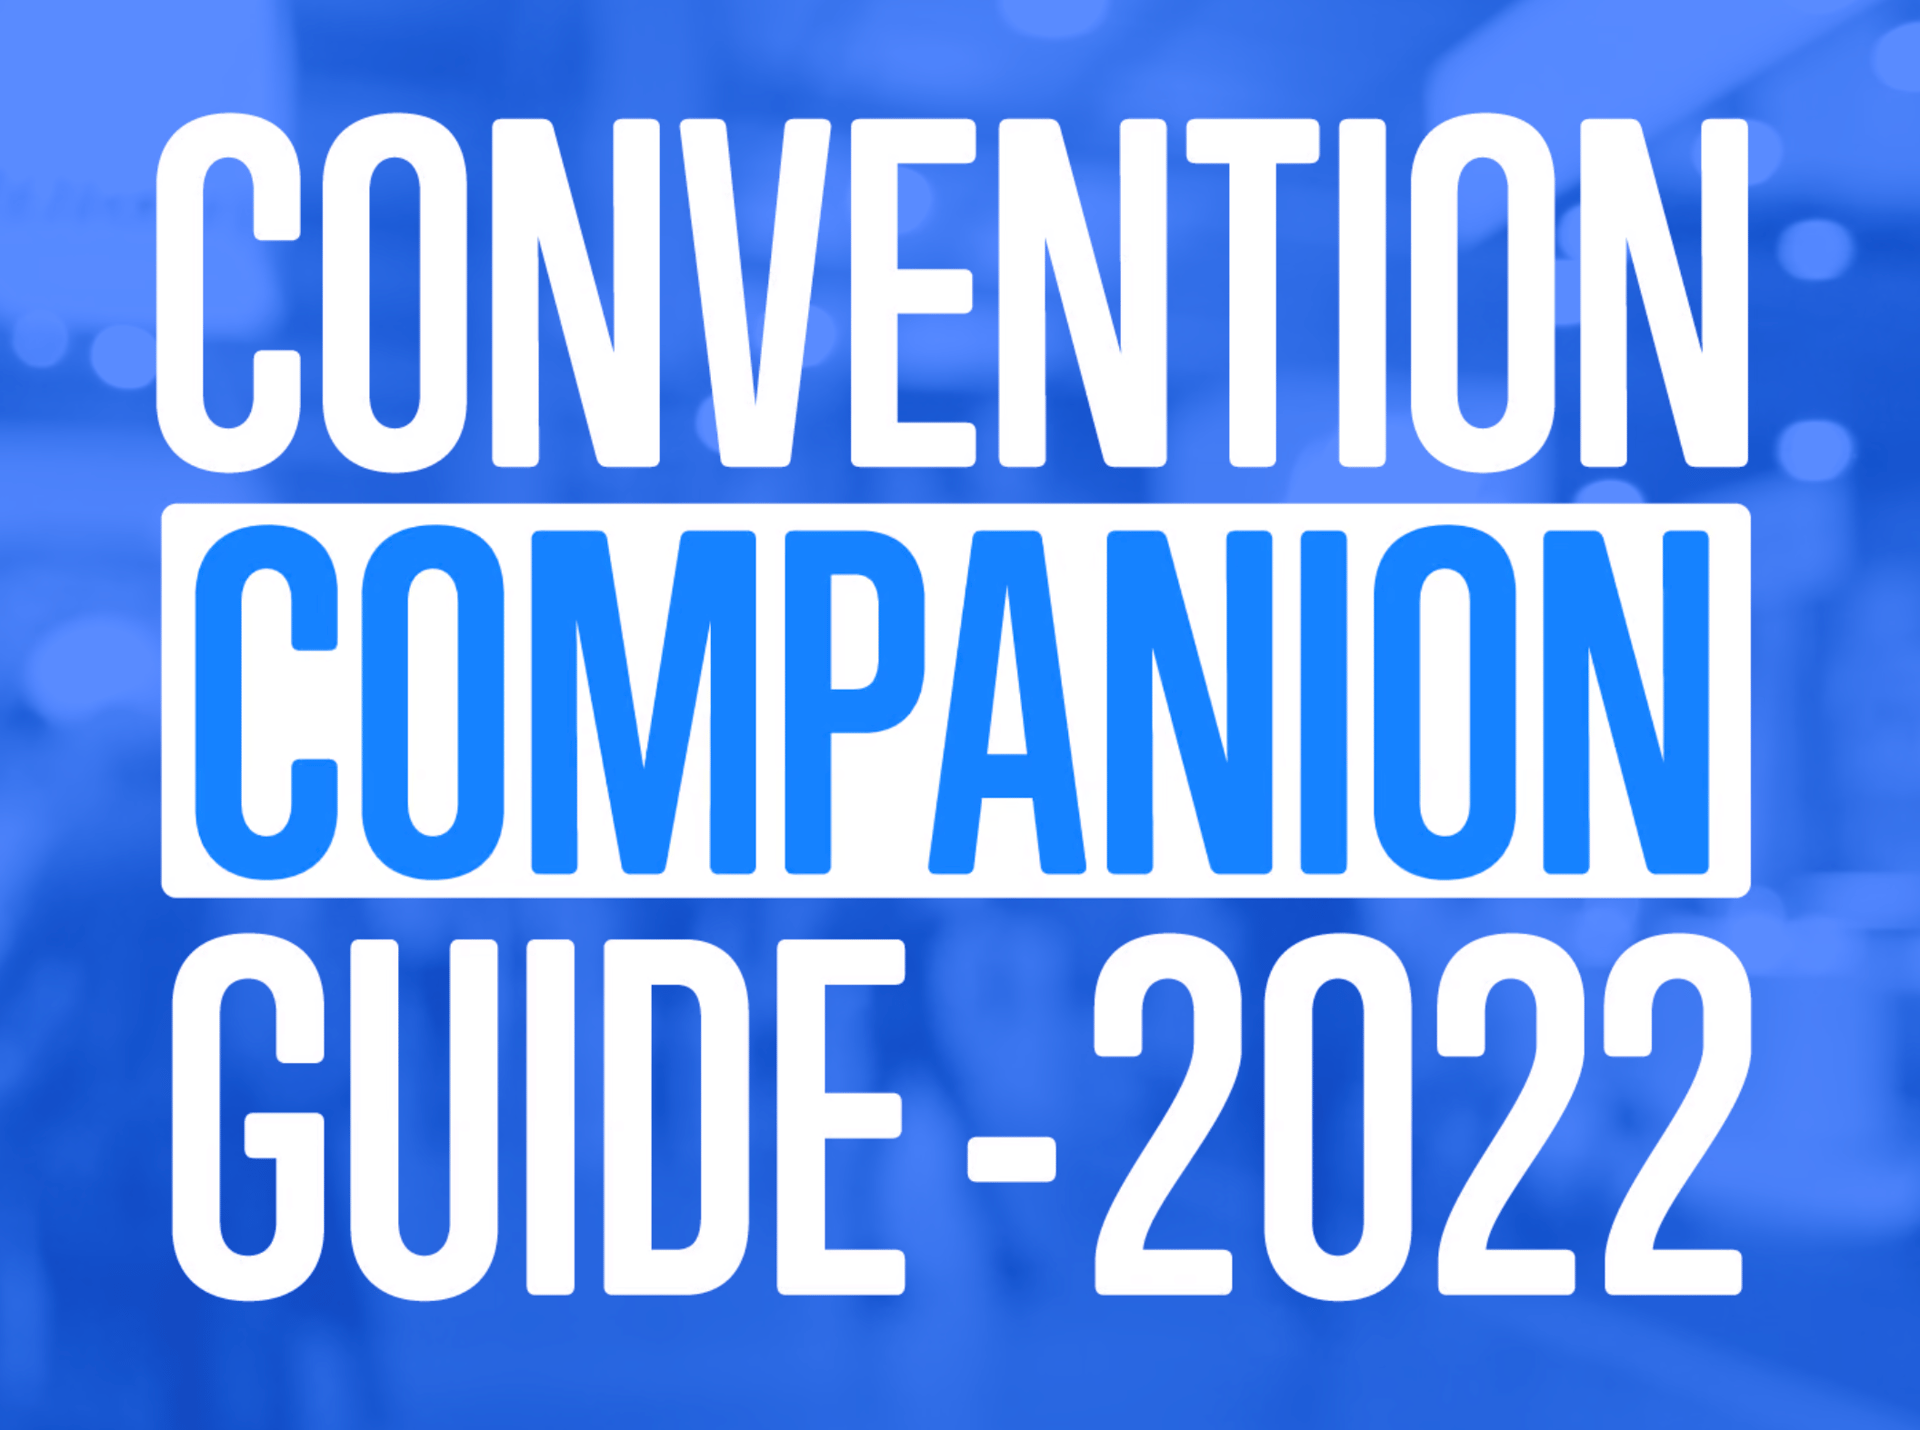 Convention Companion Guide - 2022